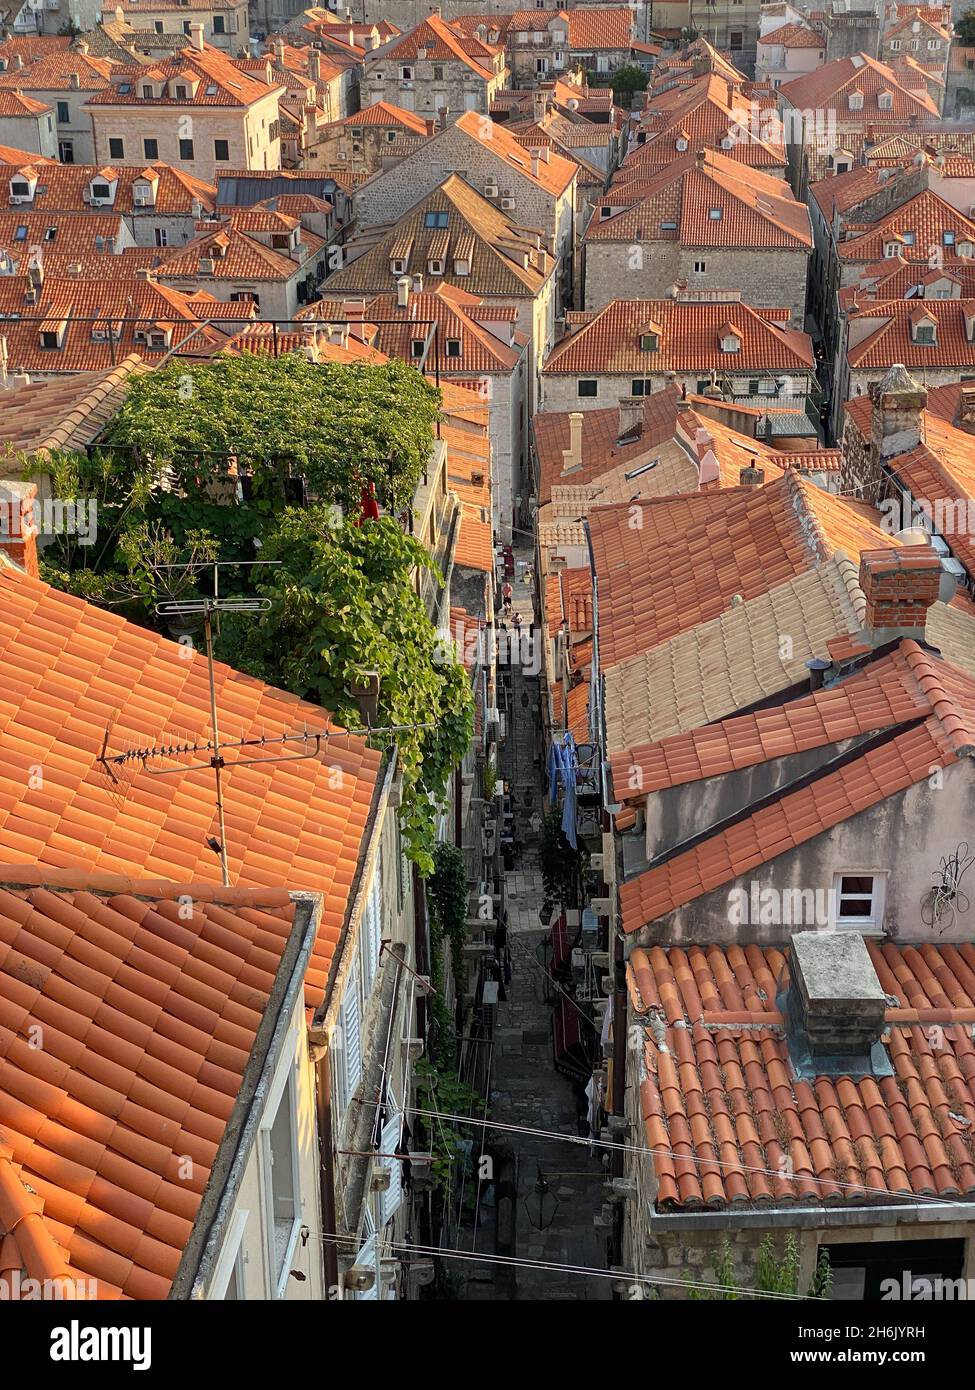 Vista general de Dubrovnik, Croacia, el casco antiguo, las casas de tejado rojo, la muralla de la ciudad y el mar Mediterráneo Foto de stock